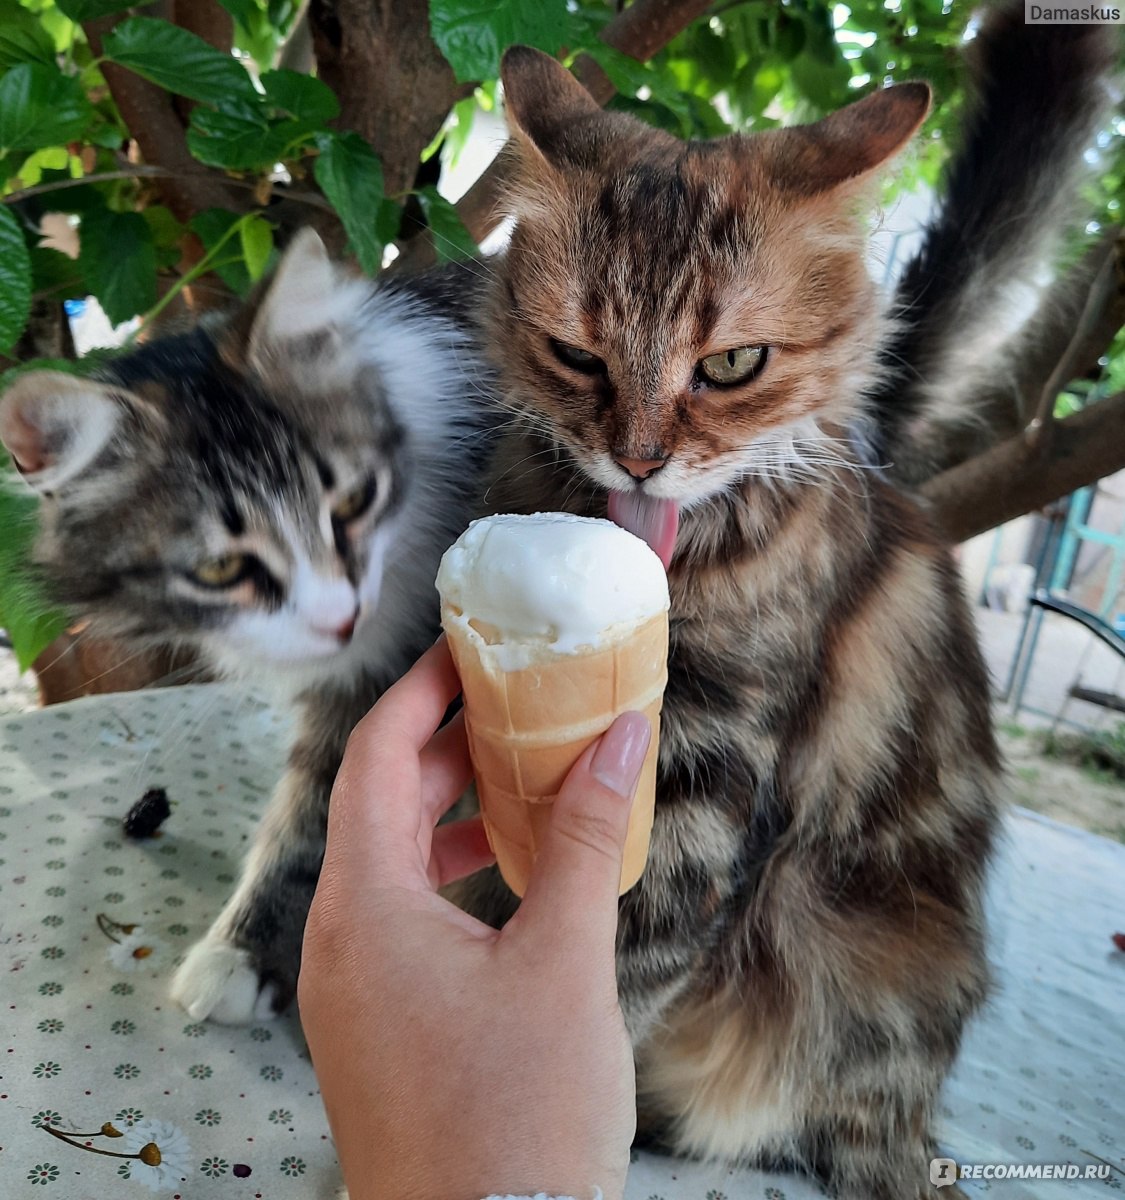 Мороженое Славица Берёзка ванильное фото